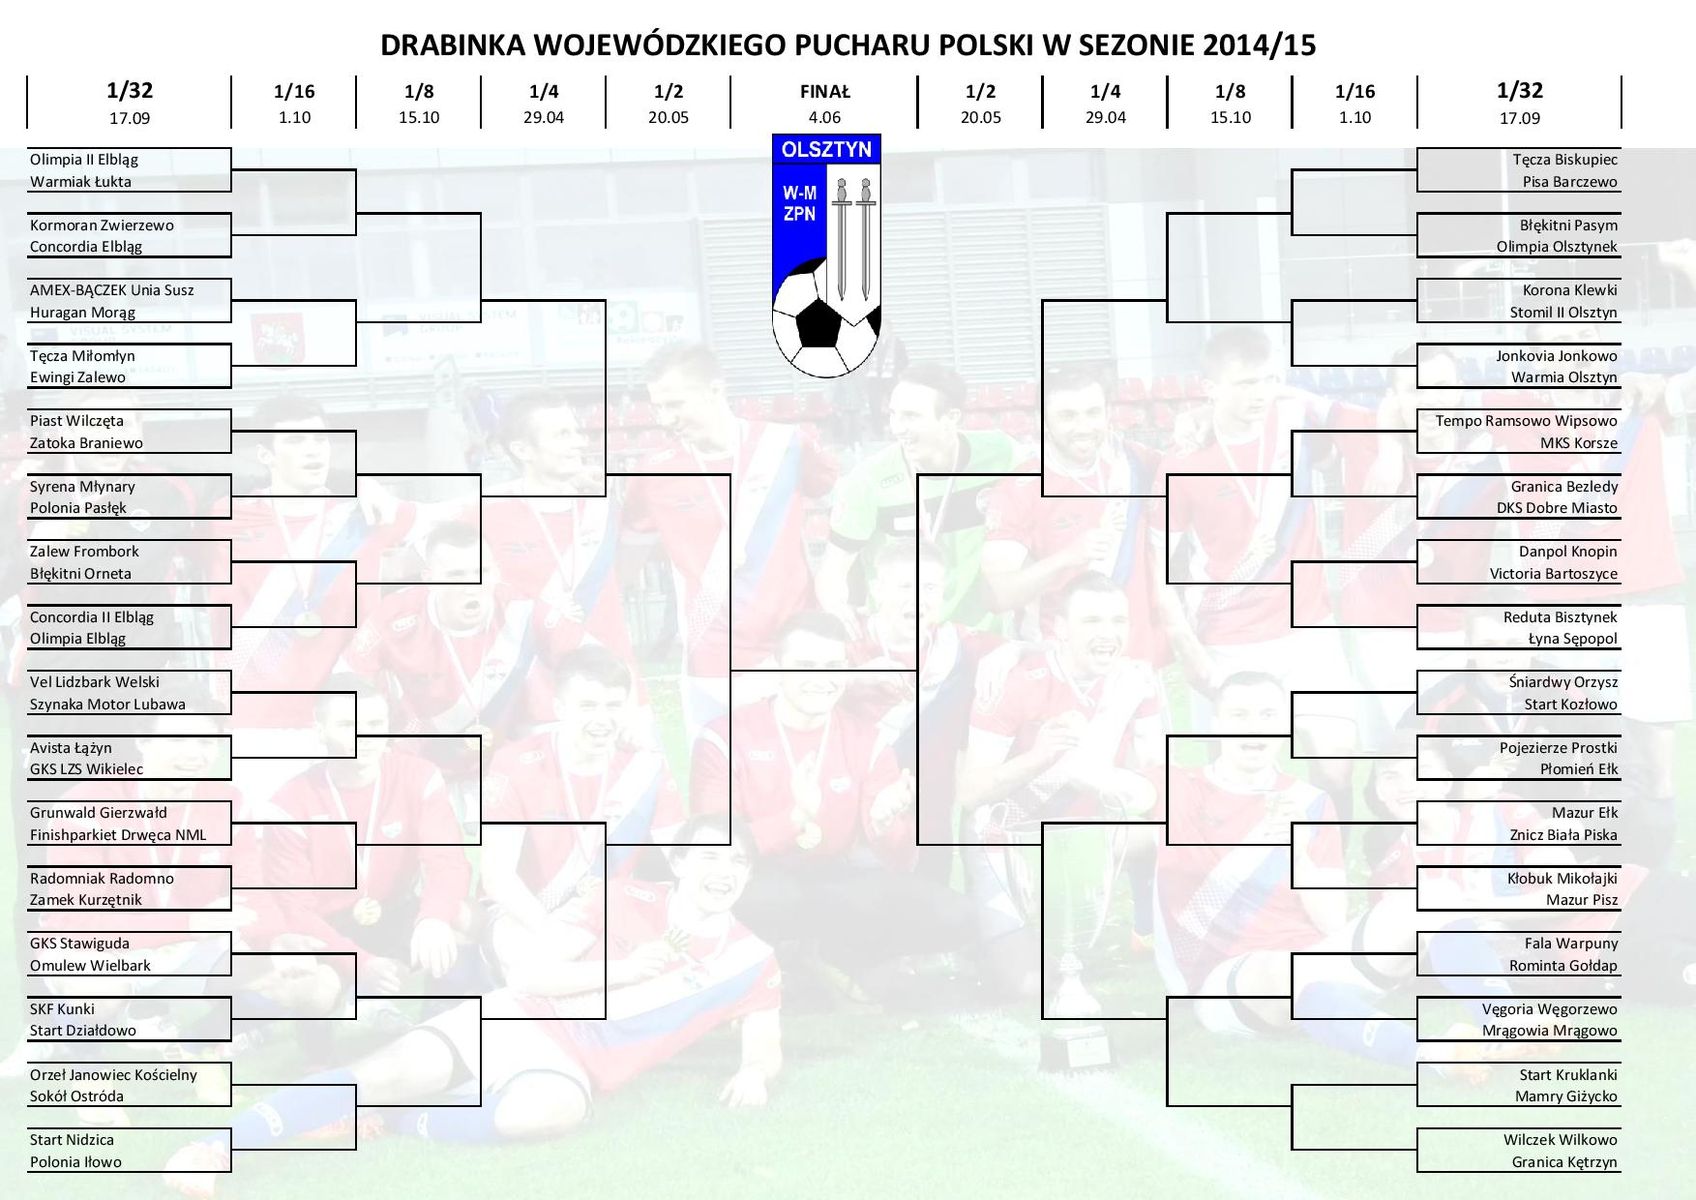 Turniejowa drabinka Wojewódzkiego Pucharu Polski. 